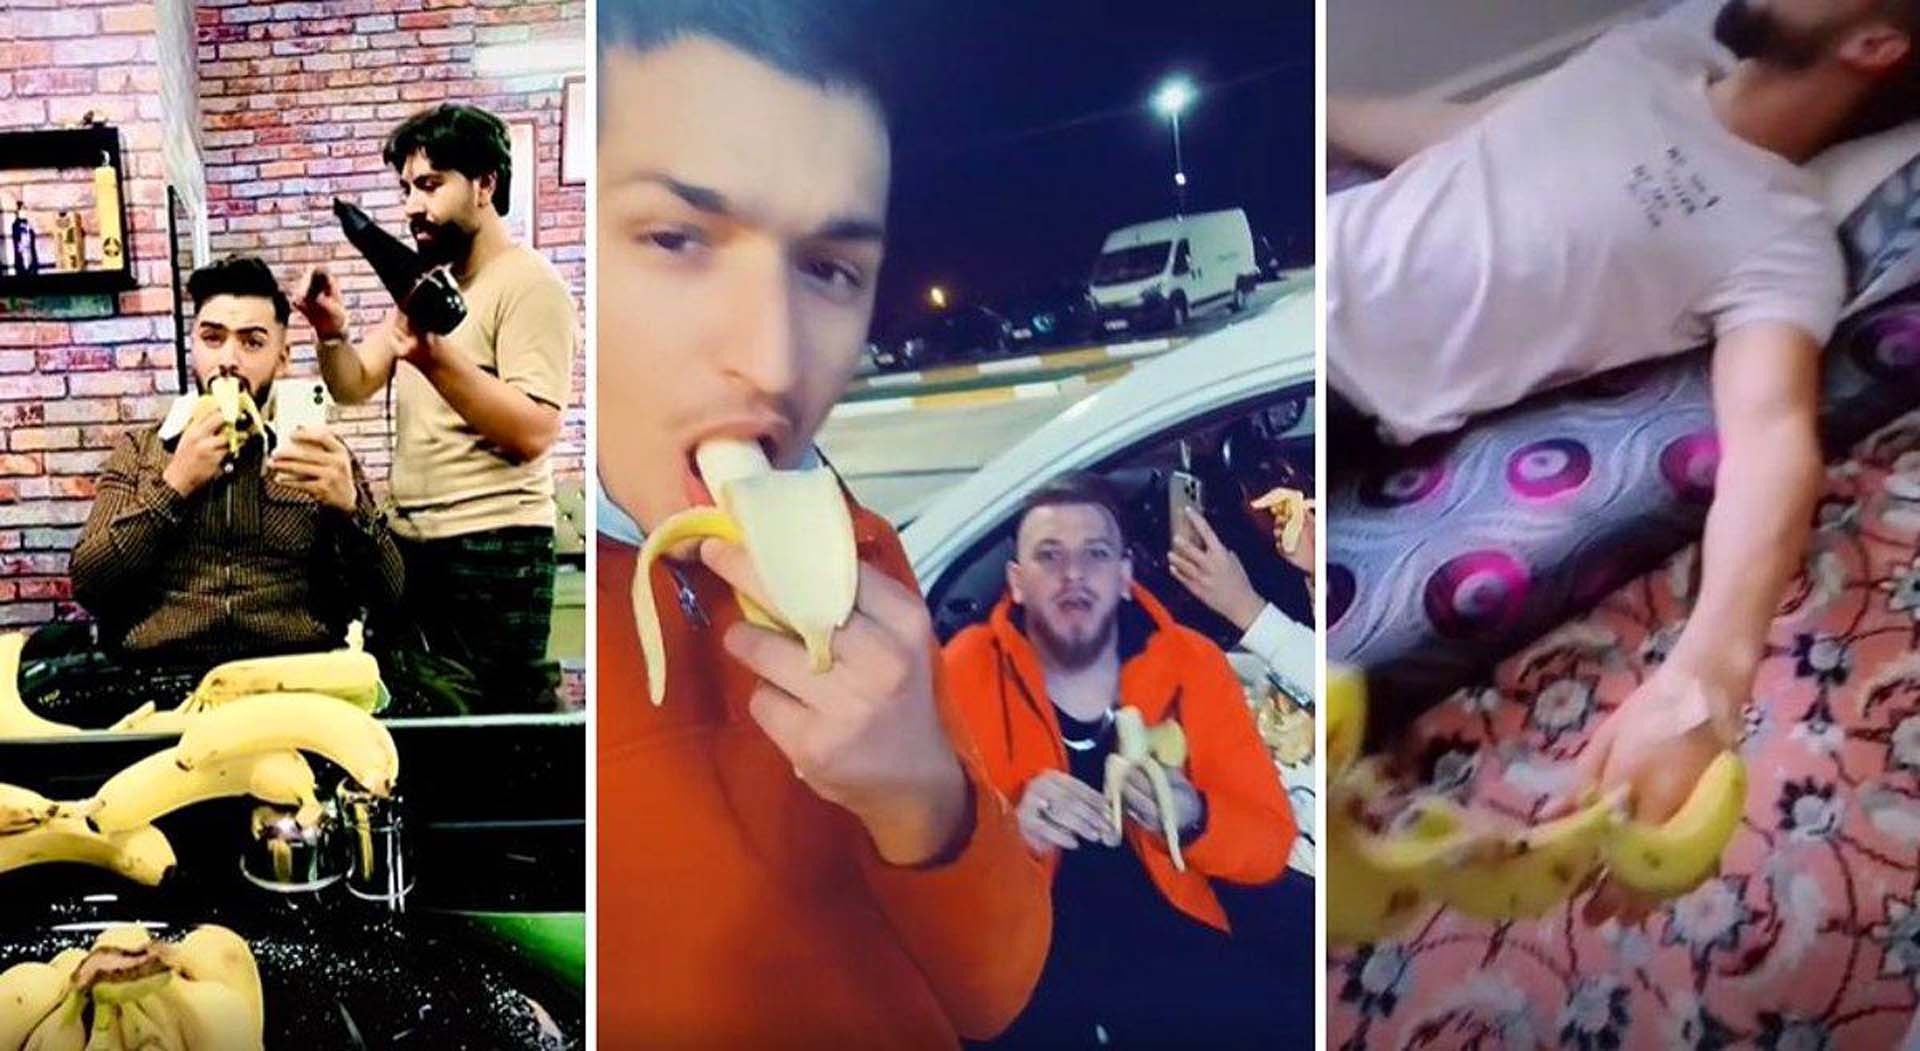 Suriyeli sığınmacılar hadlerini aştı! &quot; Biz muz yiyemiyoruz&quot; diyen Türk  vatandaşıyla dalga geçmek için muz yeme akımı